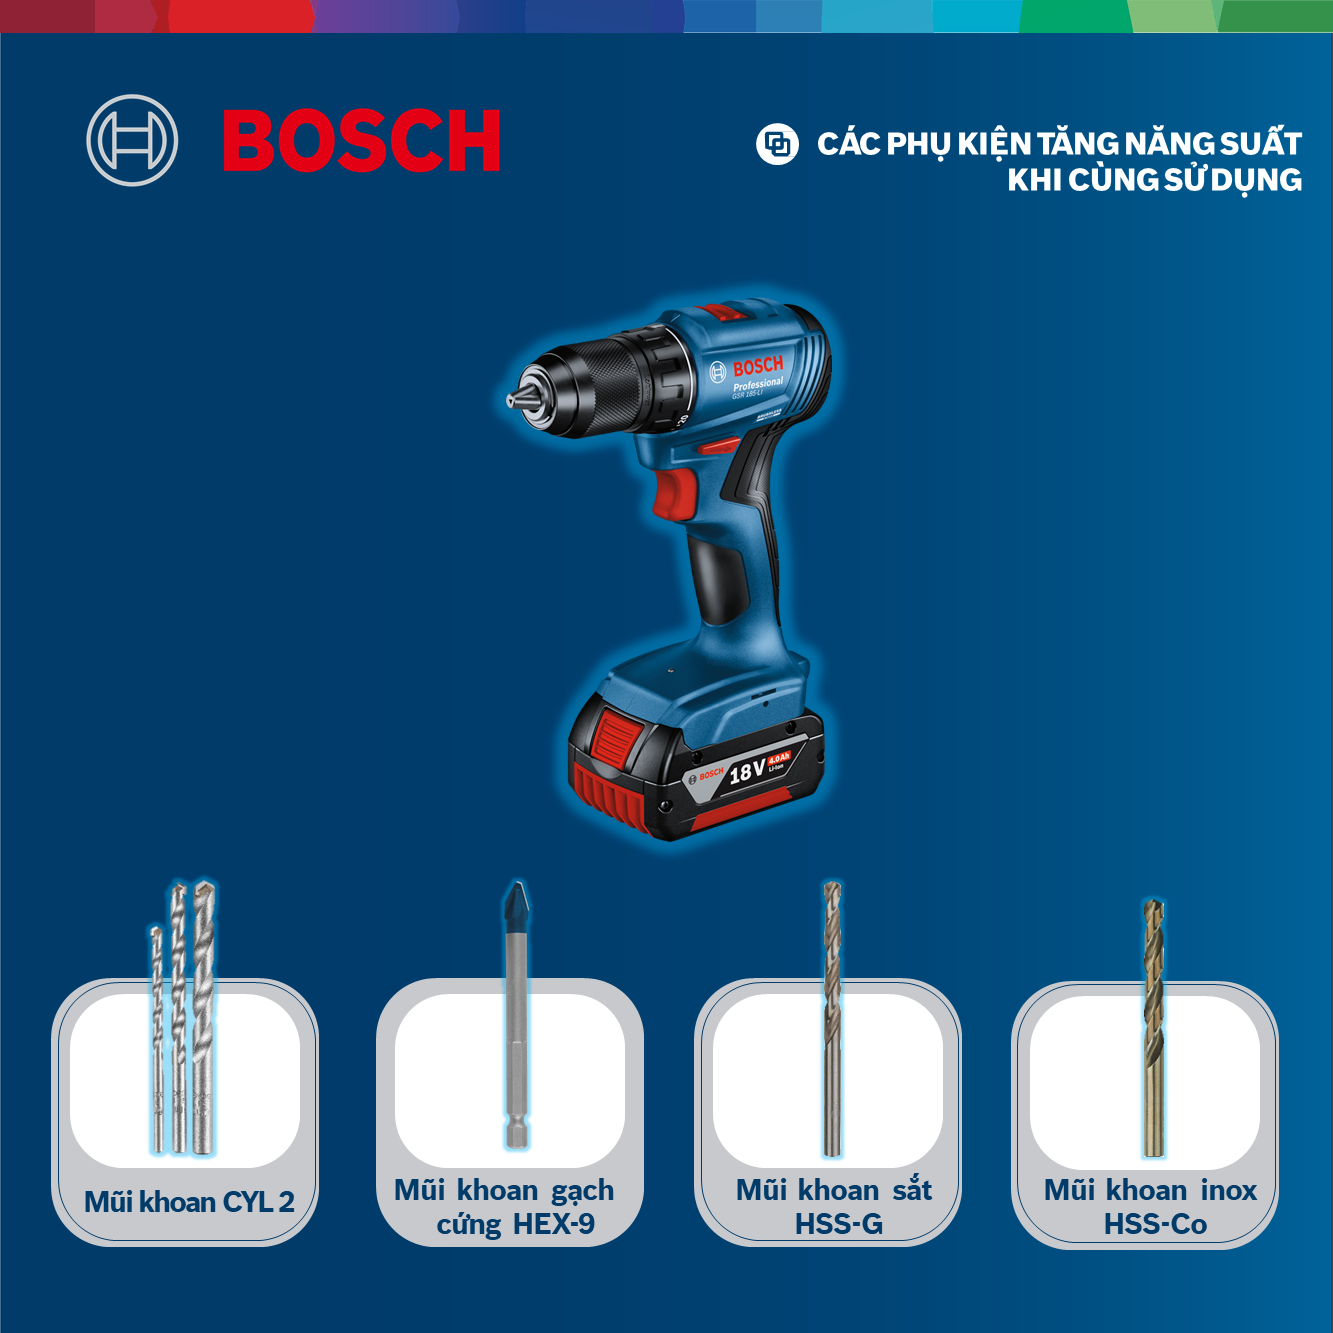 Máy khoan vặn vít dùng pin Bosch GSR 185-LI và Phụ kiện